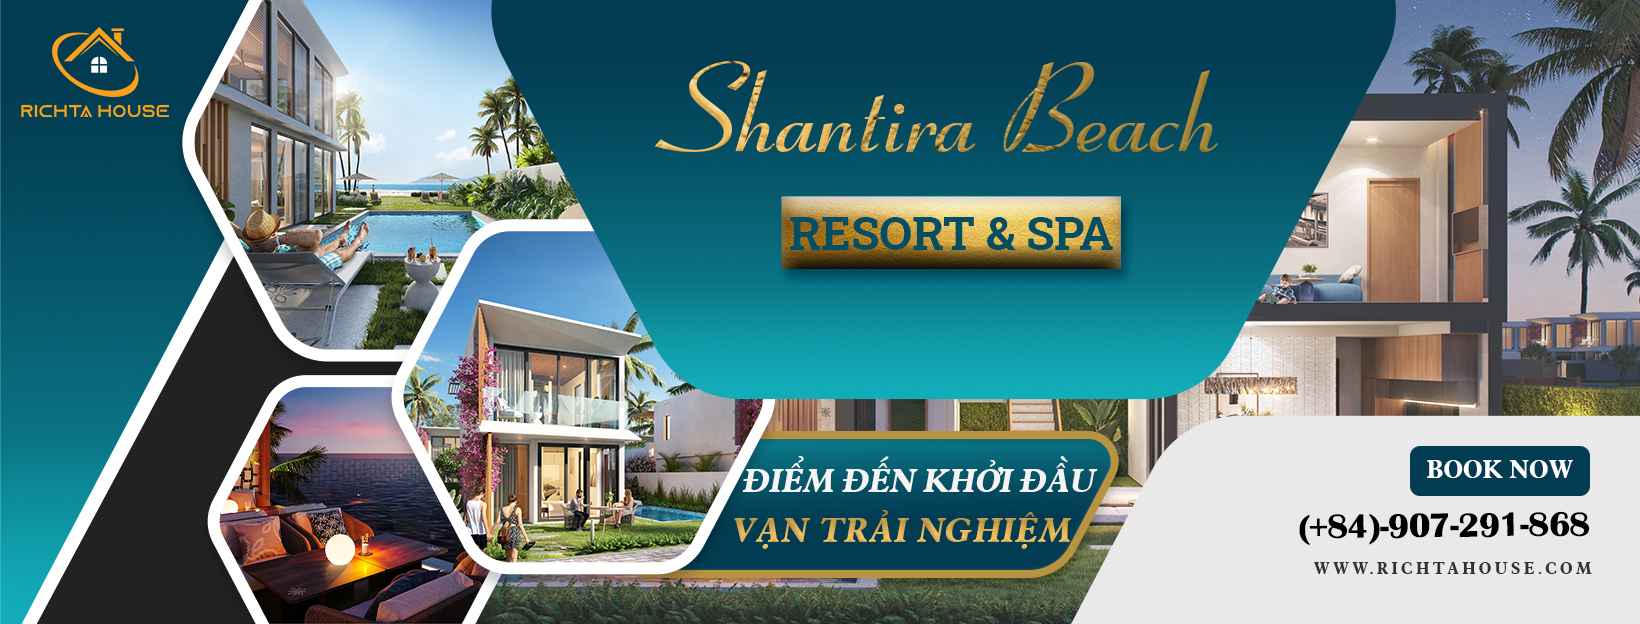 Banner dự án Shantira bearch resort 2